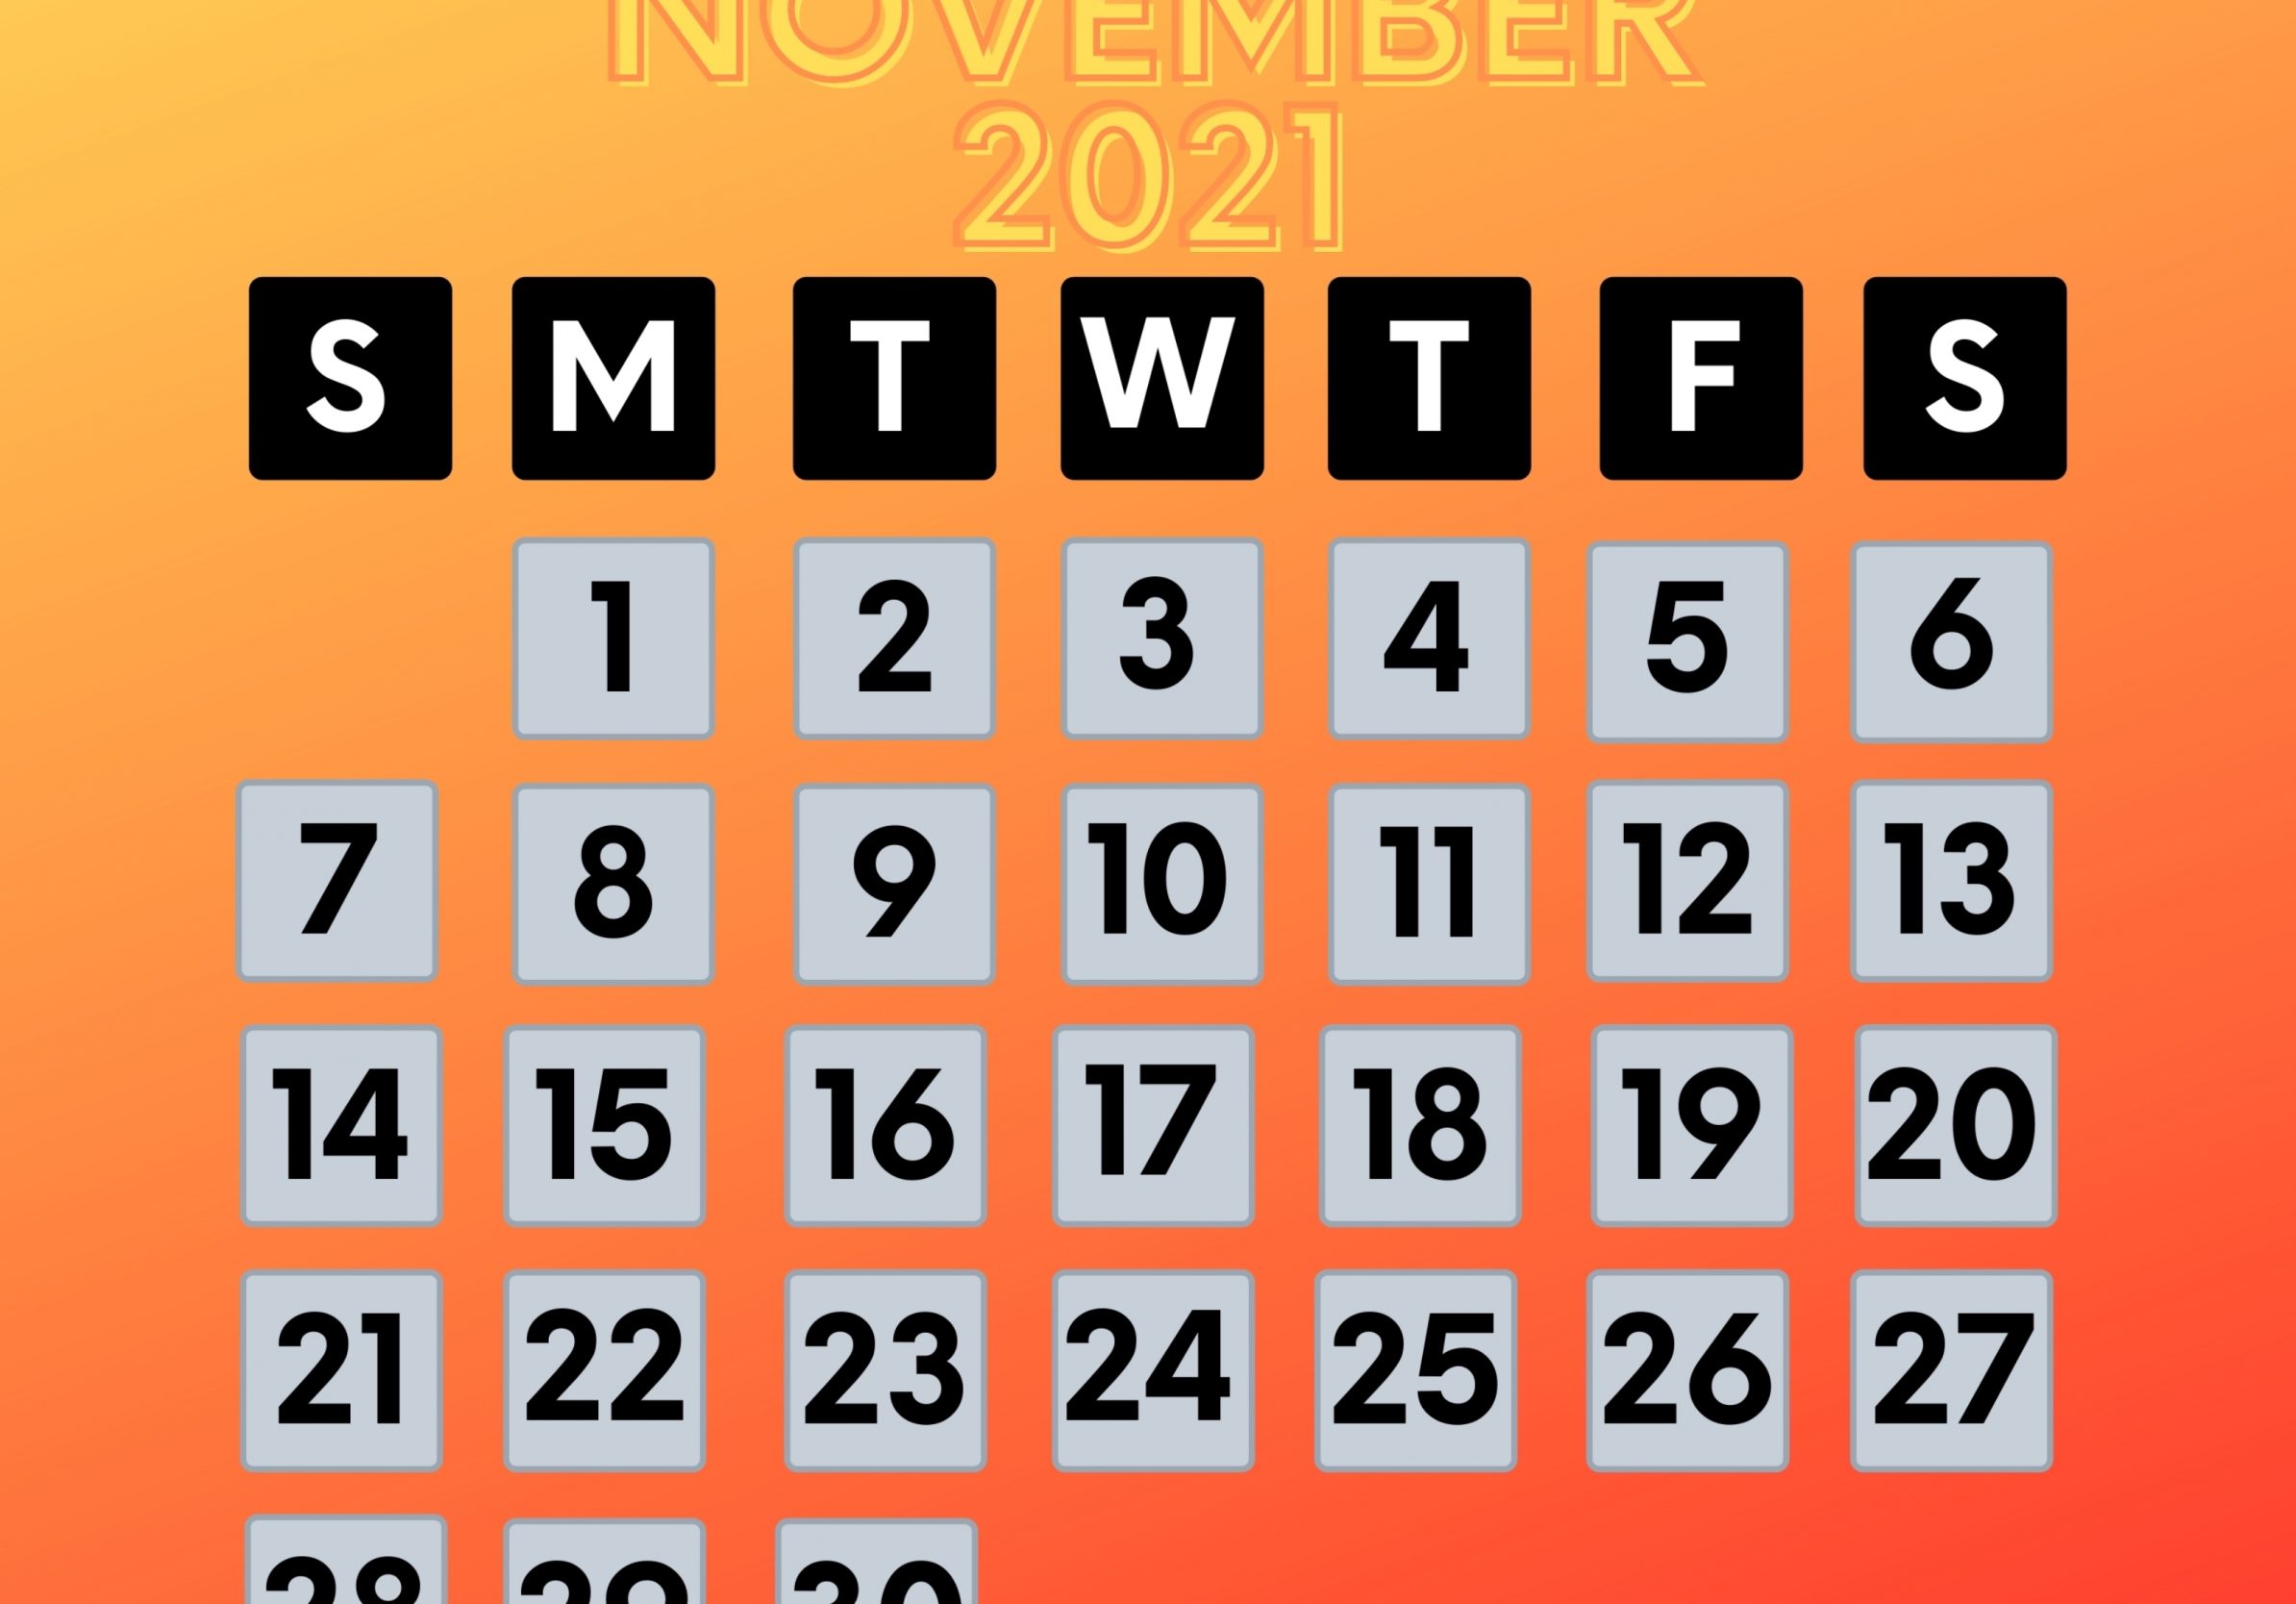 2388x1668 iPad Pro wallpapers November 2021 Calendar iPad Wallpaper 2388x1668 pixels resolution